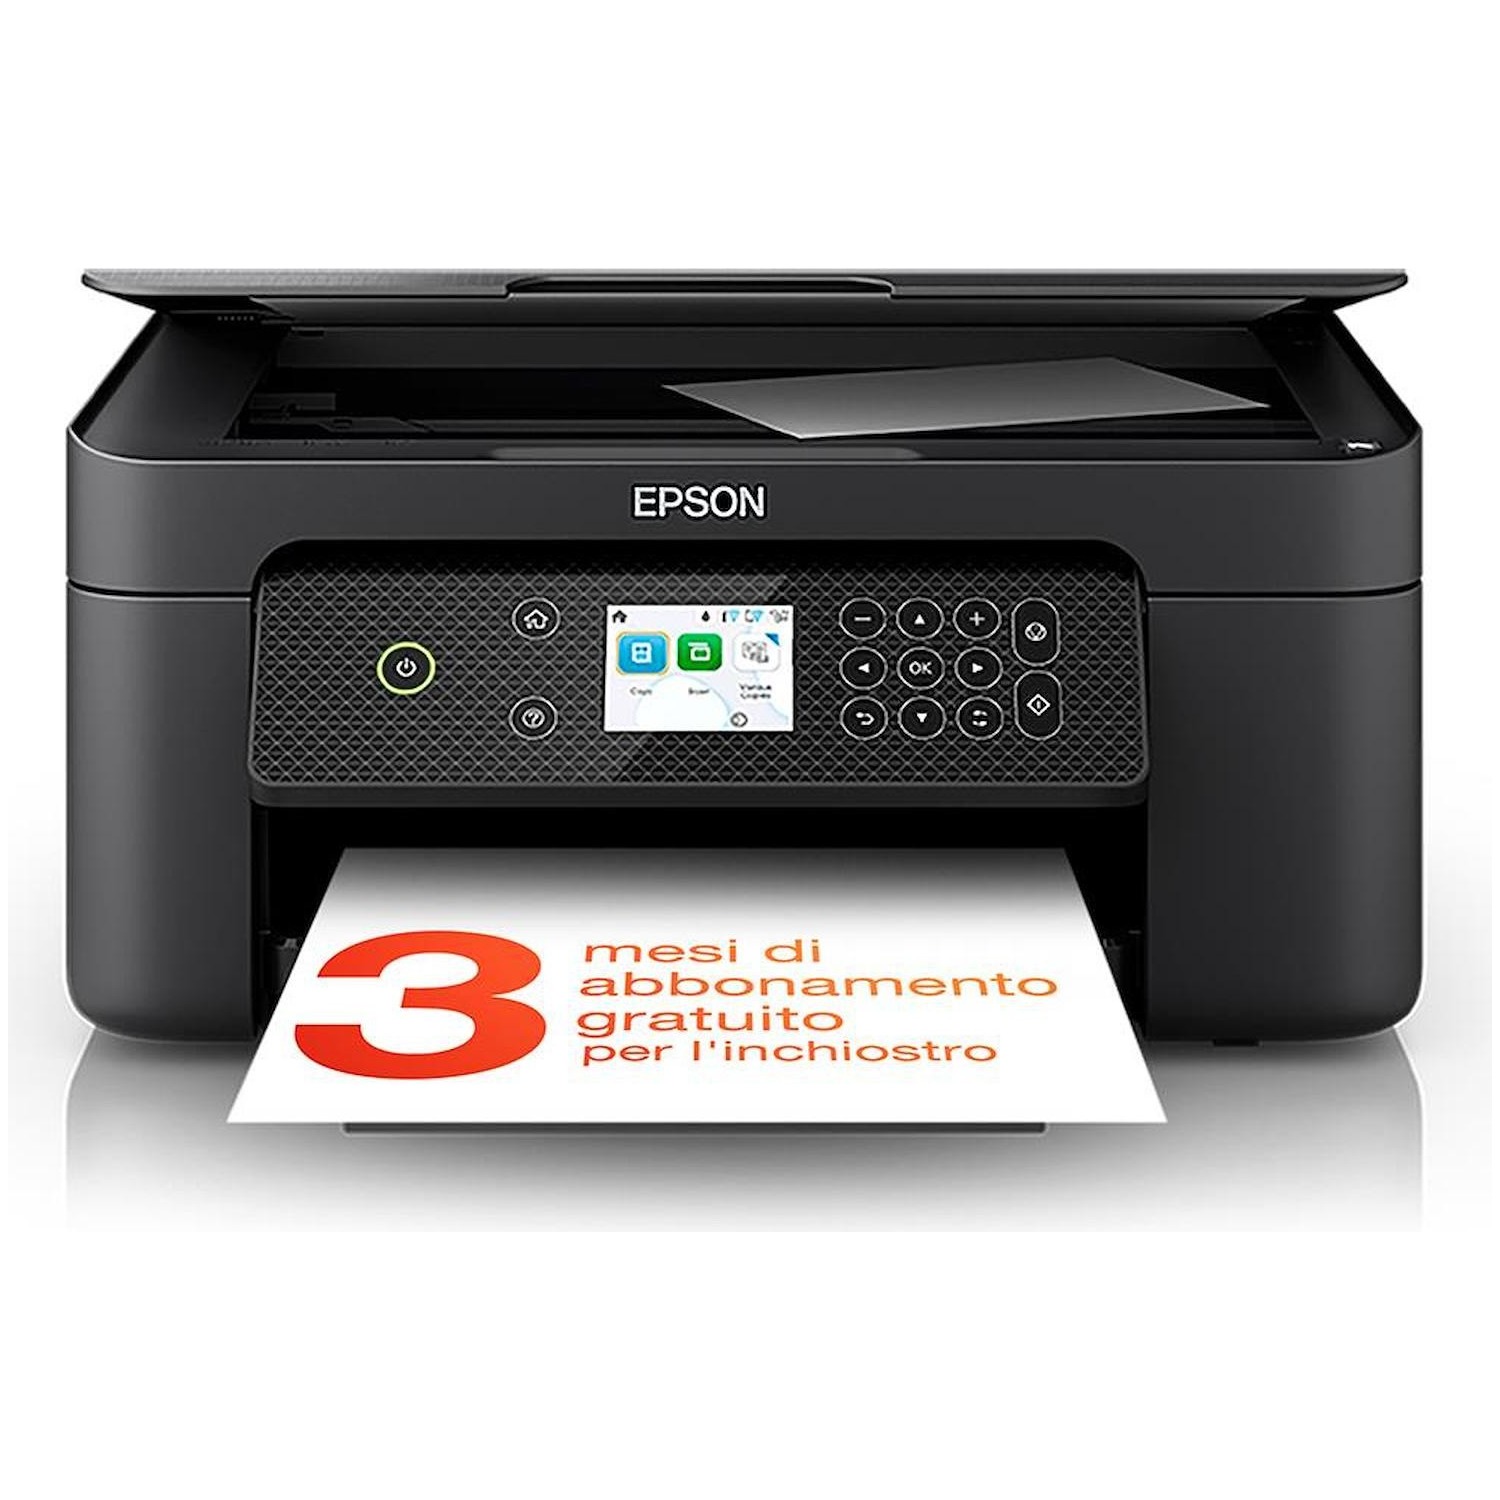 Immagine per Stampante multifunzione Epson XP-4200 nera da DIMOStore